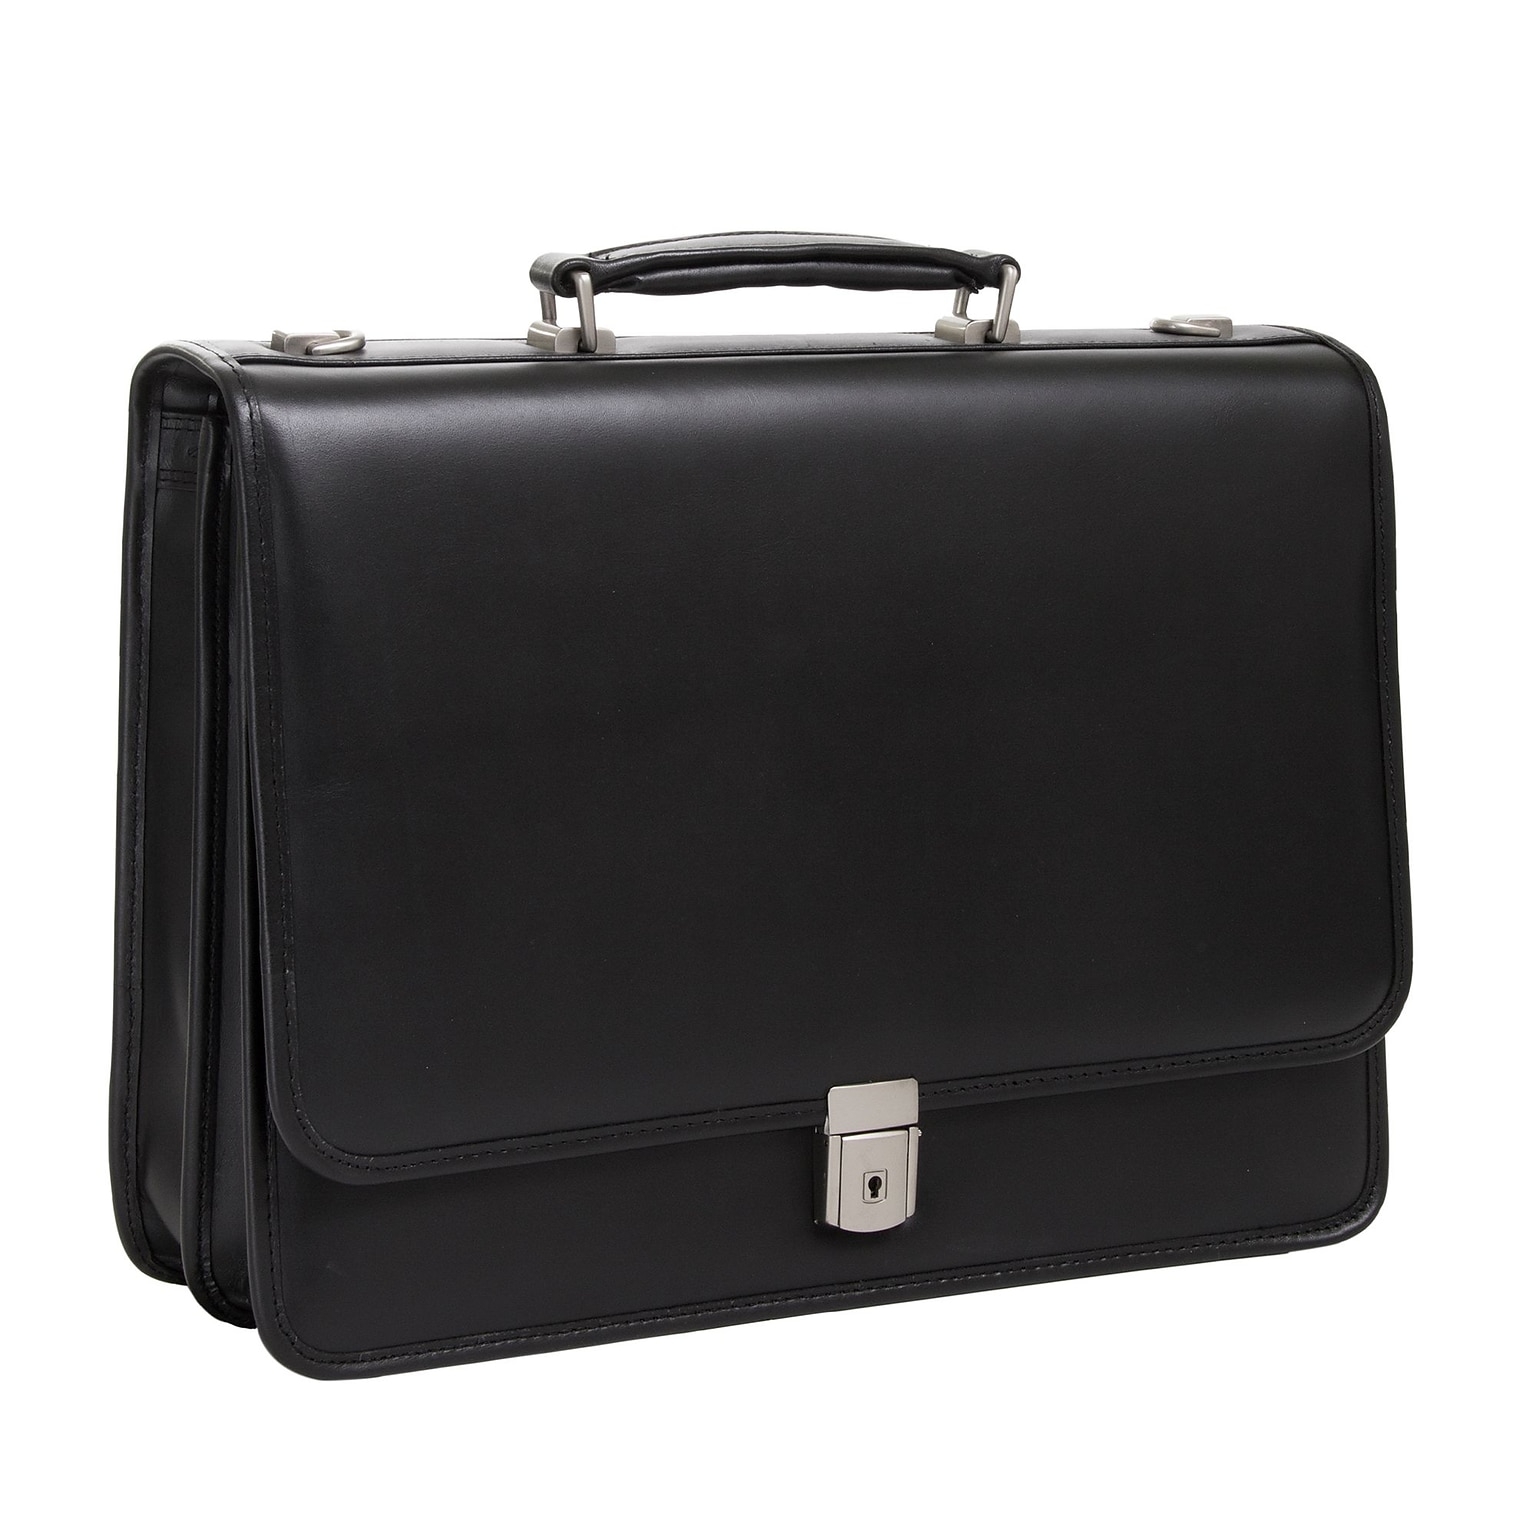 McKlein V Series, LEXINGTON, Top Grain Cowhide Leather,Flapover Double Compartment Briefcase, Black (83545)